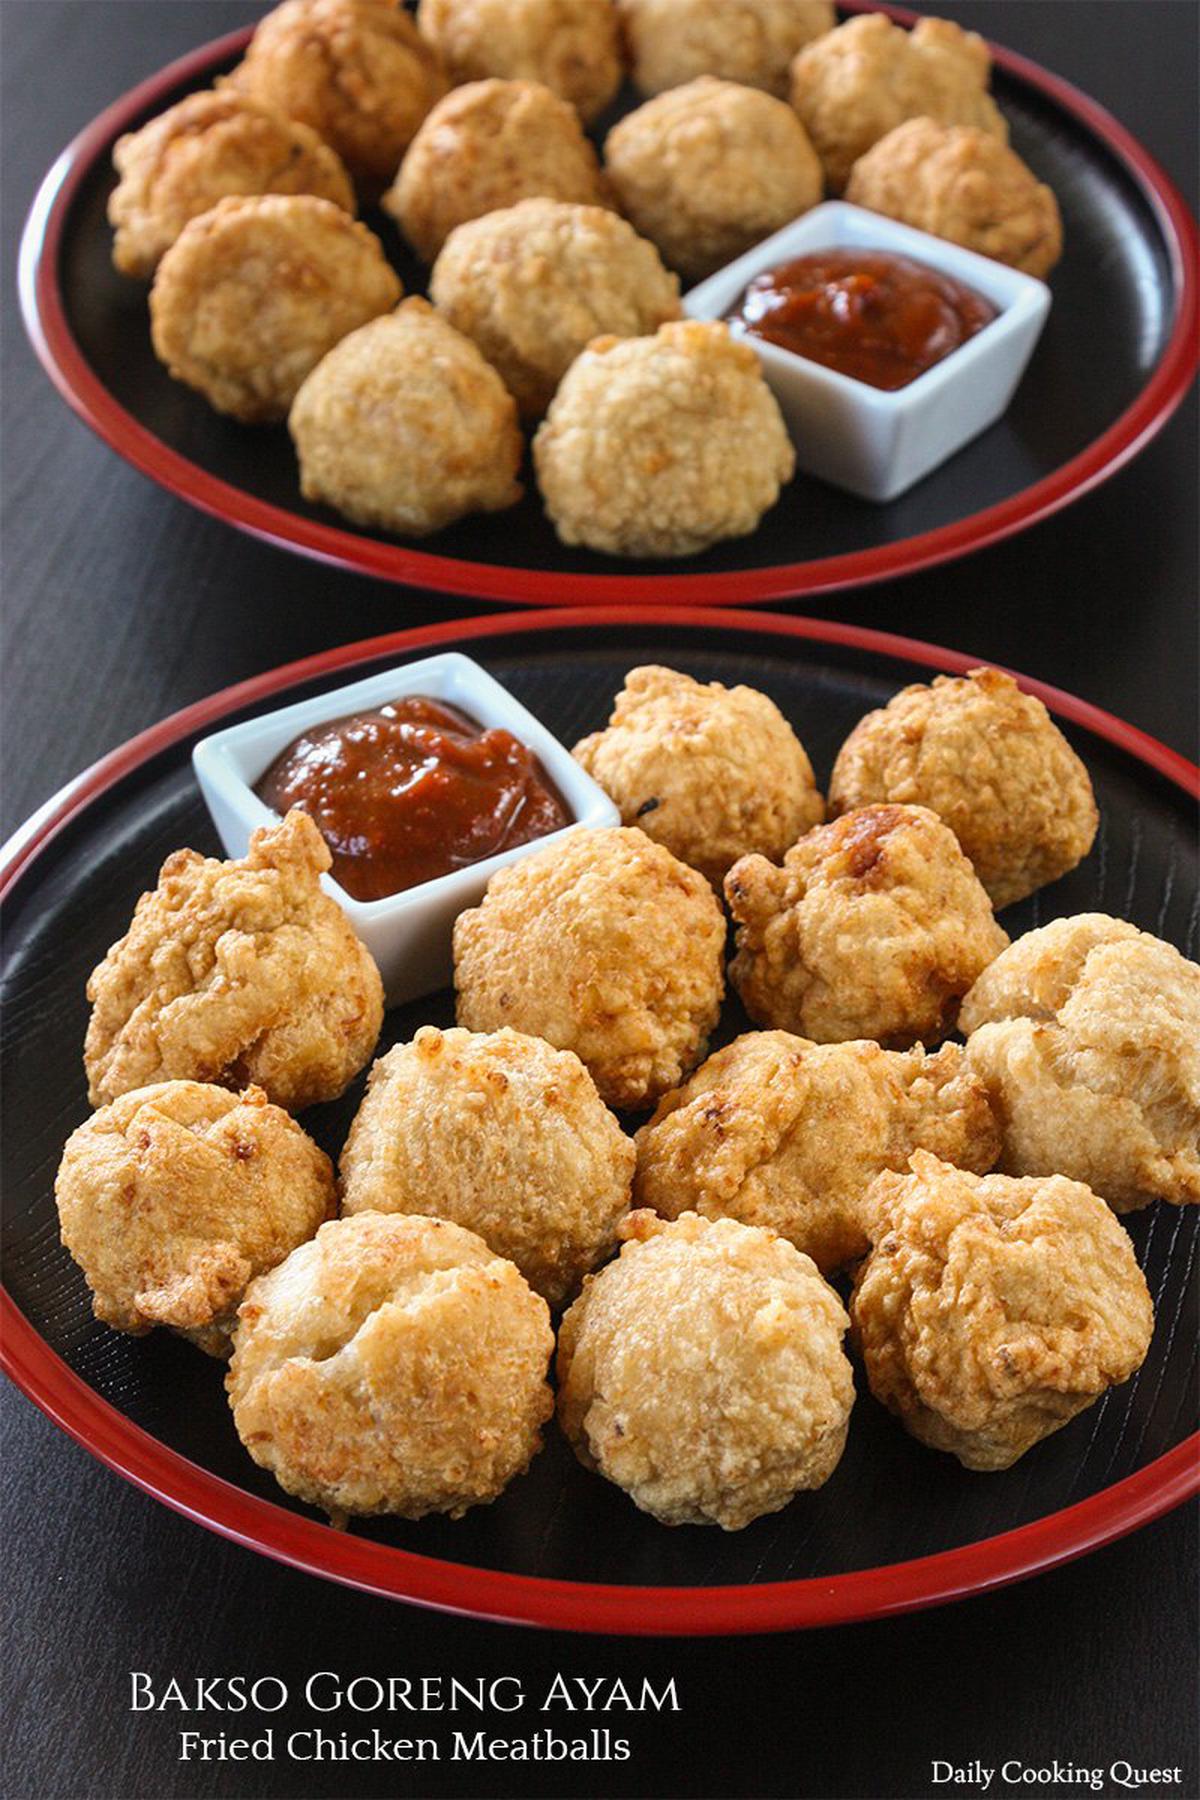 Bakso Goreng Ayam - Fried Chicken Meatballs